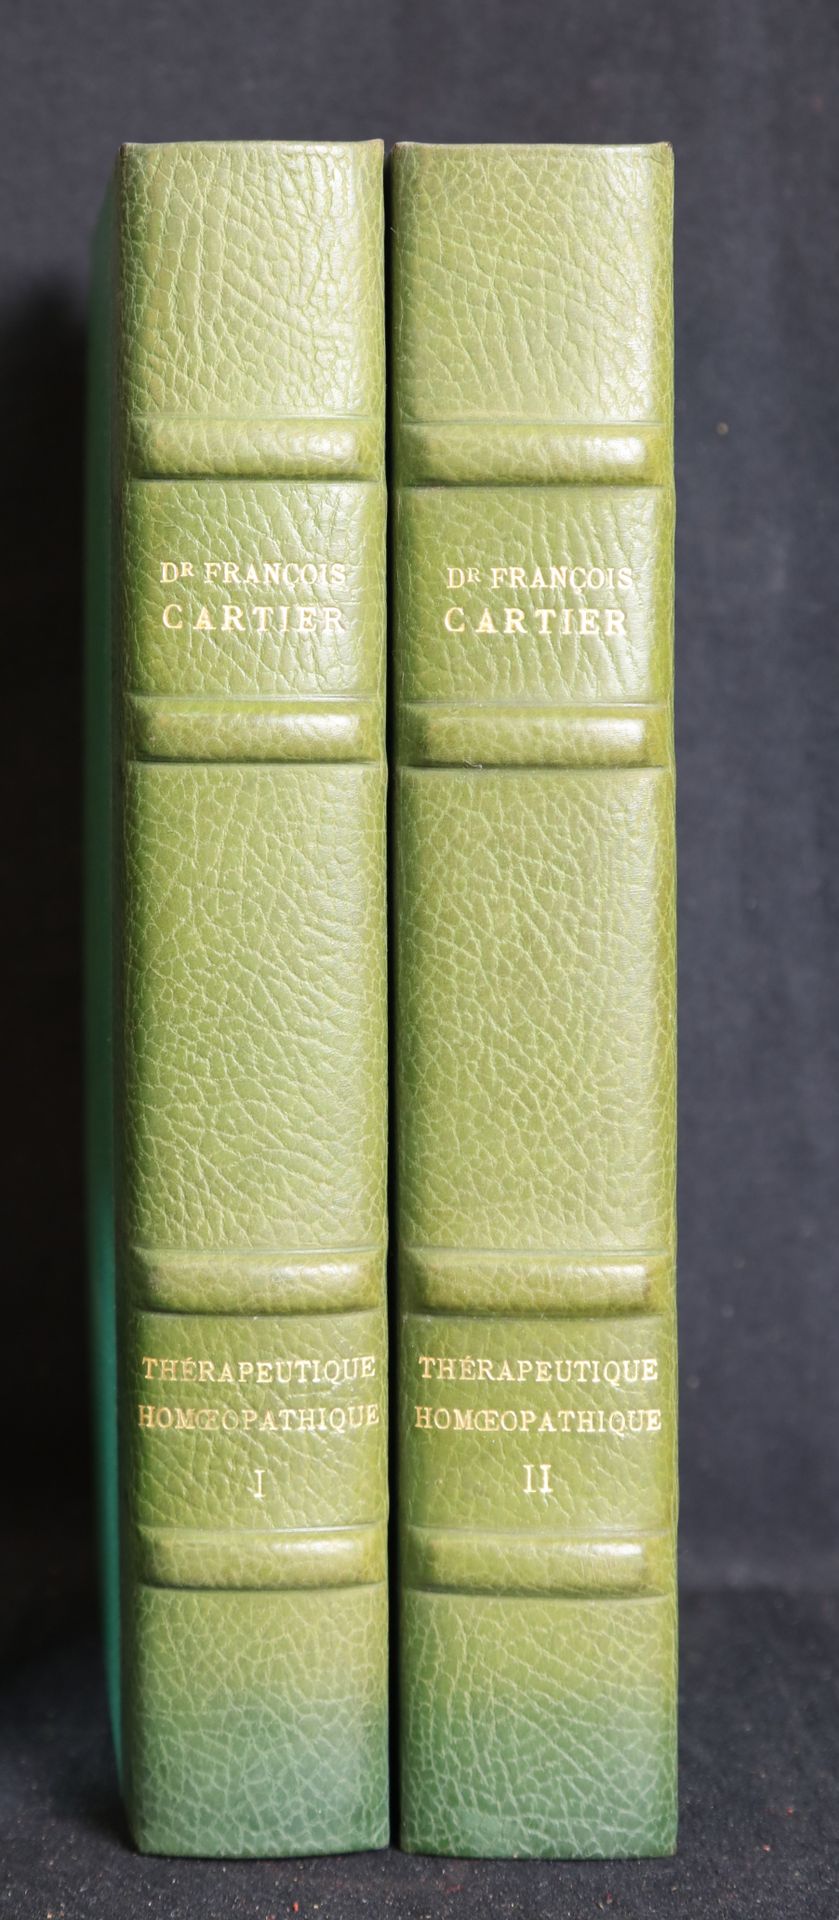 Null CARTIER F. Dc, thérapeutique homéopathique I et II. (volumes)